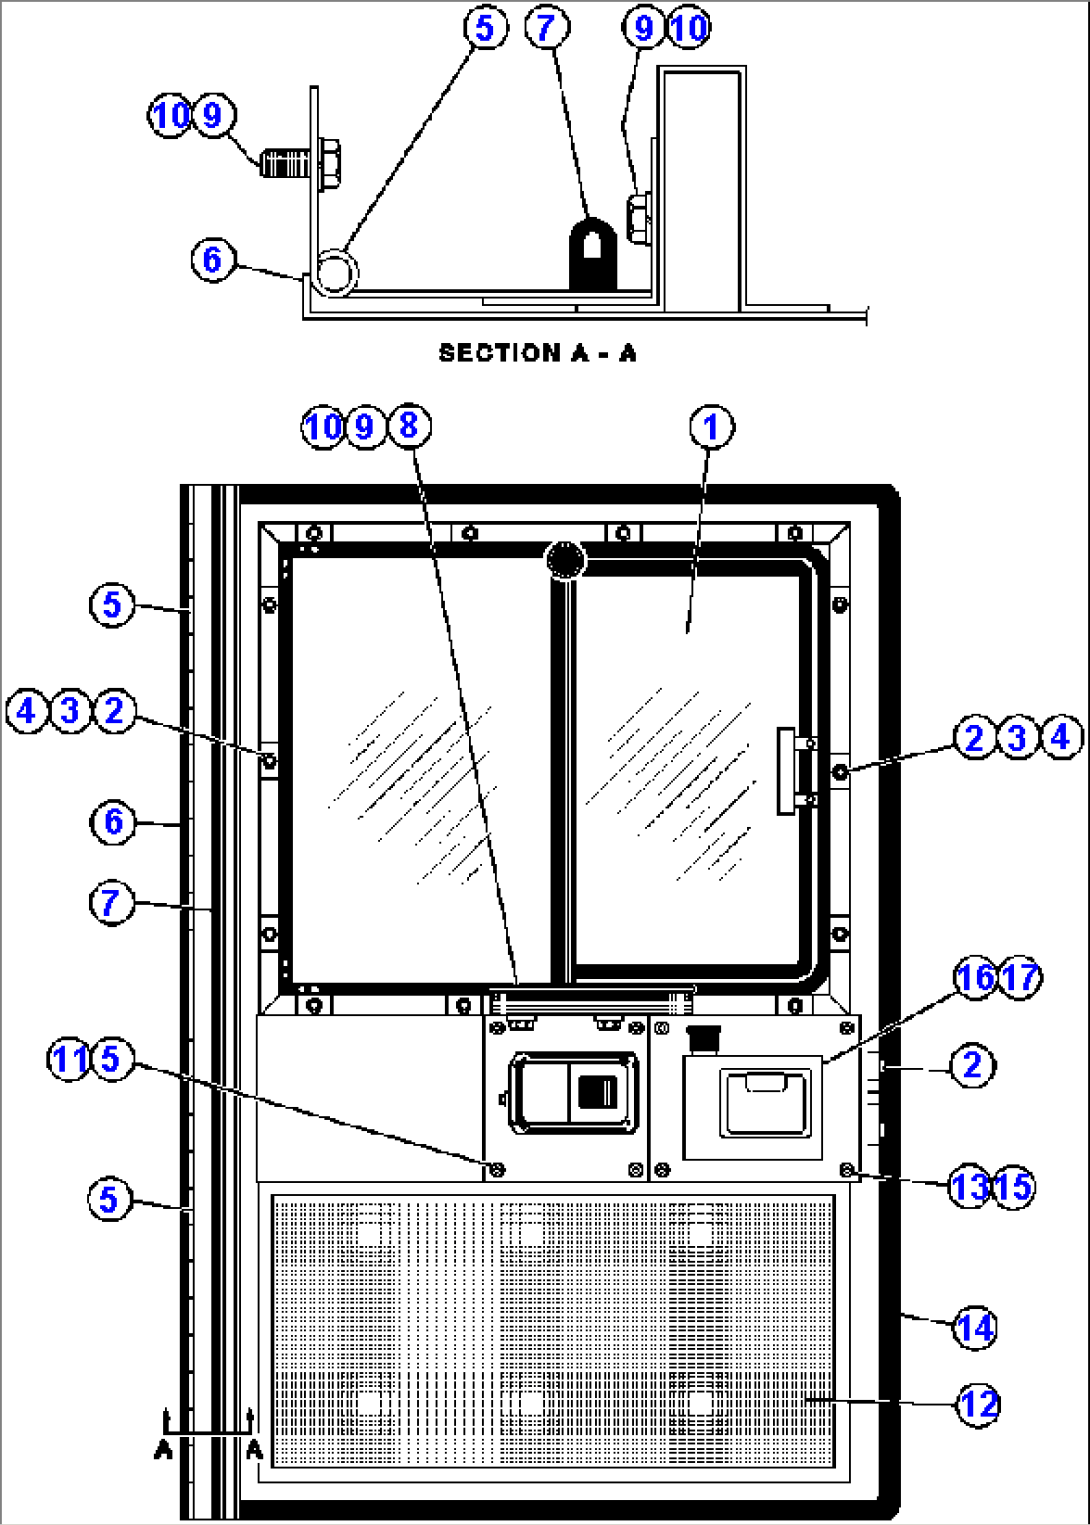 DOOR ASSM (BF0529-RH/BF0530-LH)